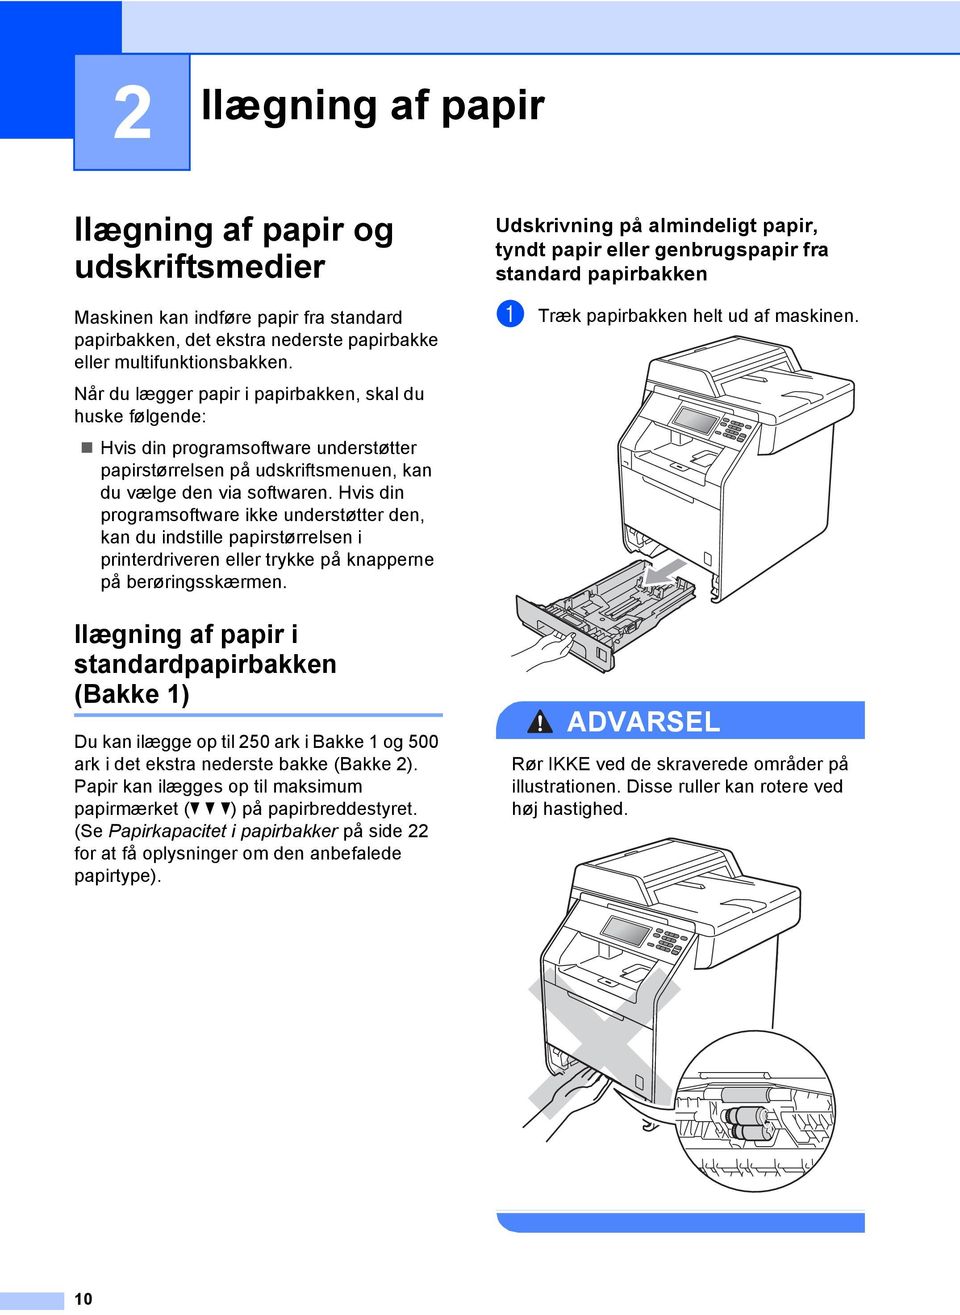 Hvis din programsoftware ikke understøtter den, kan du indstille papirstørrelsen i printerdriveren eller trykke på knapperne på berøringsskærmen.